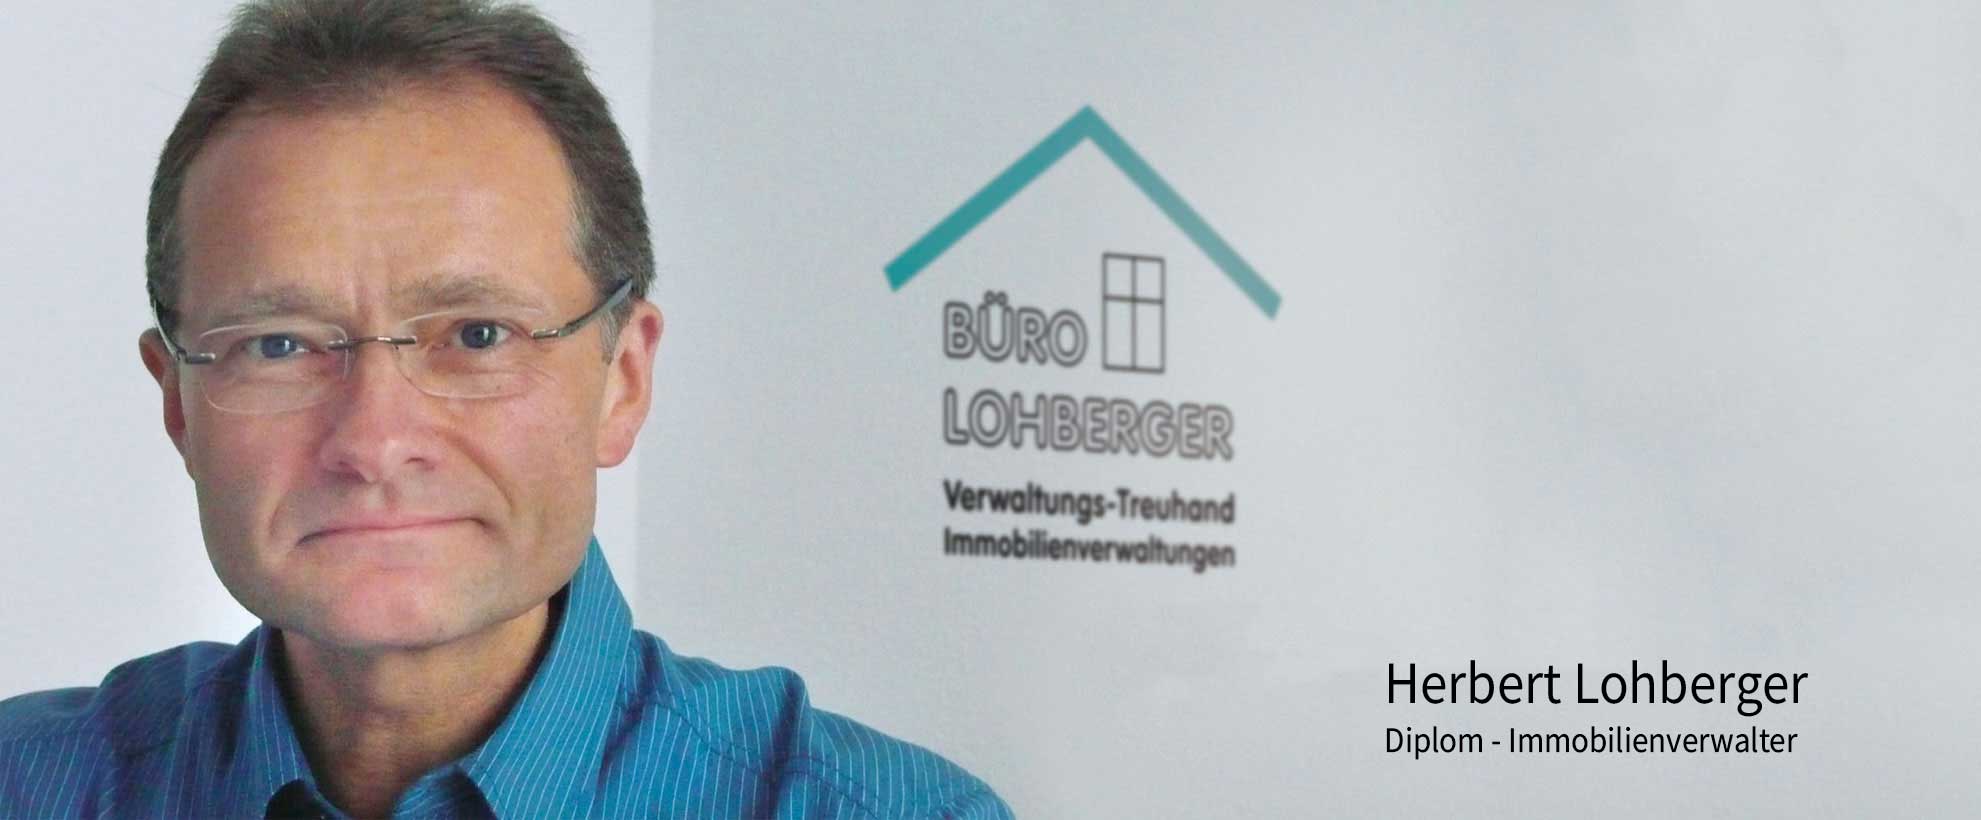 Büro Lohberger - Immobilienverwaltungen, Verwaltung-Treuhand in Kirchheim, Nürtingen, Wendlingen, Plochingen, Dettingen, Bissingen, Weilheim